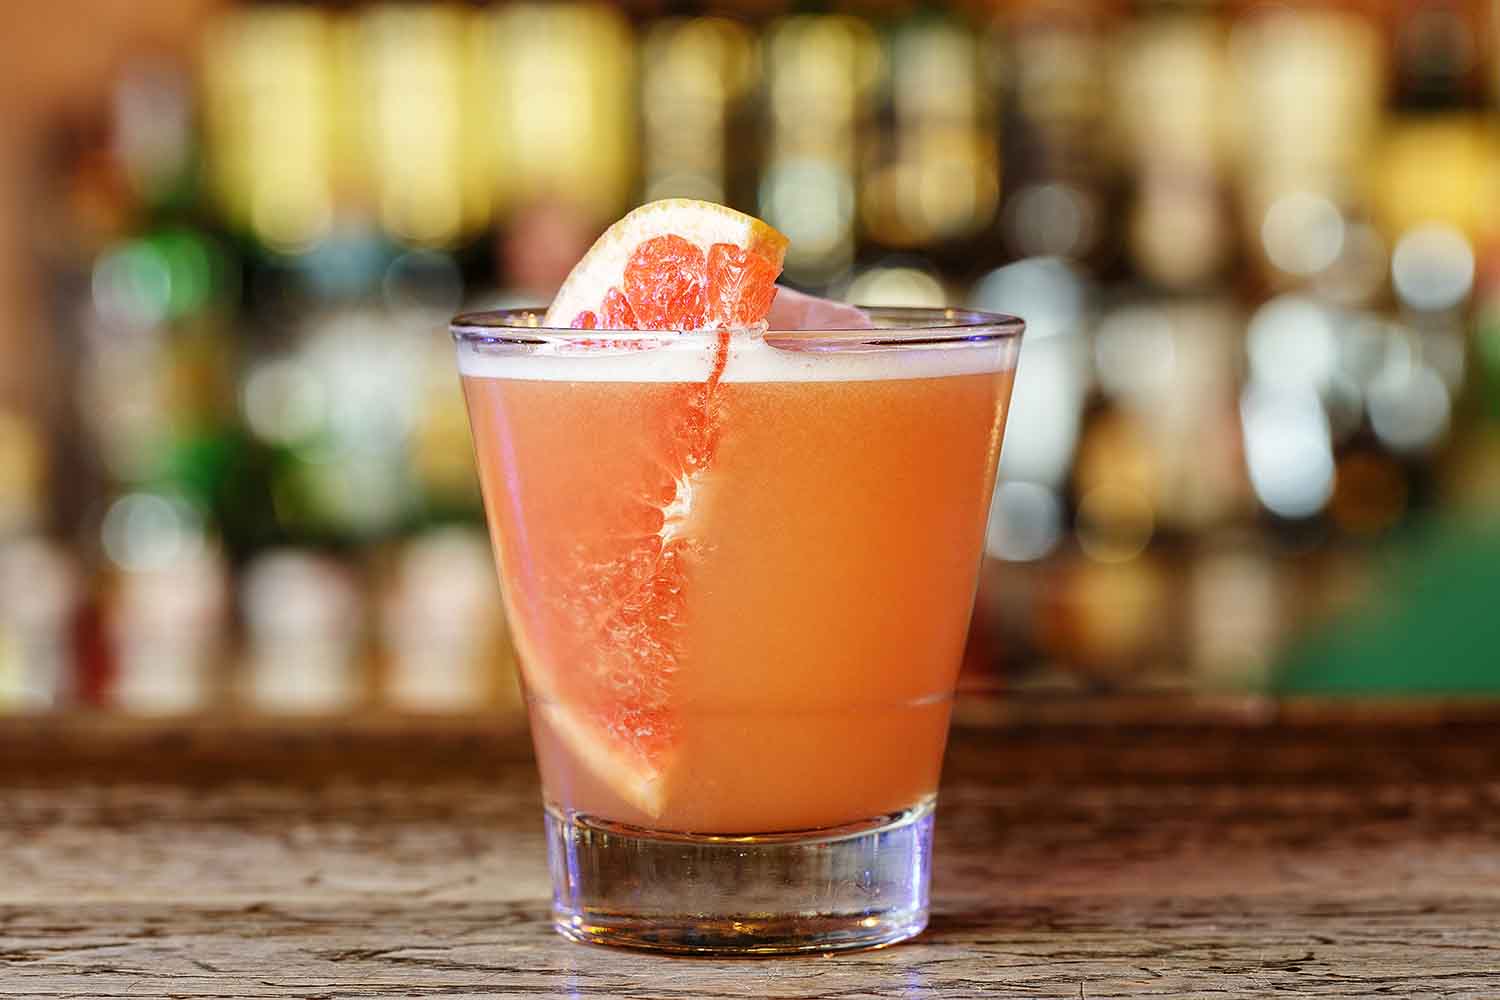 Grapefruit cocktail at a cocktail bar